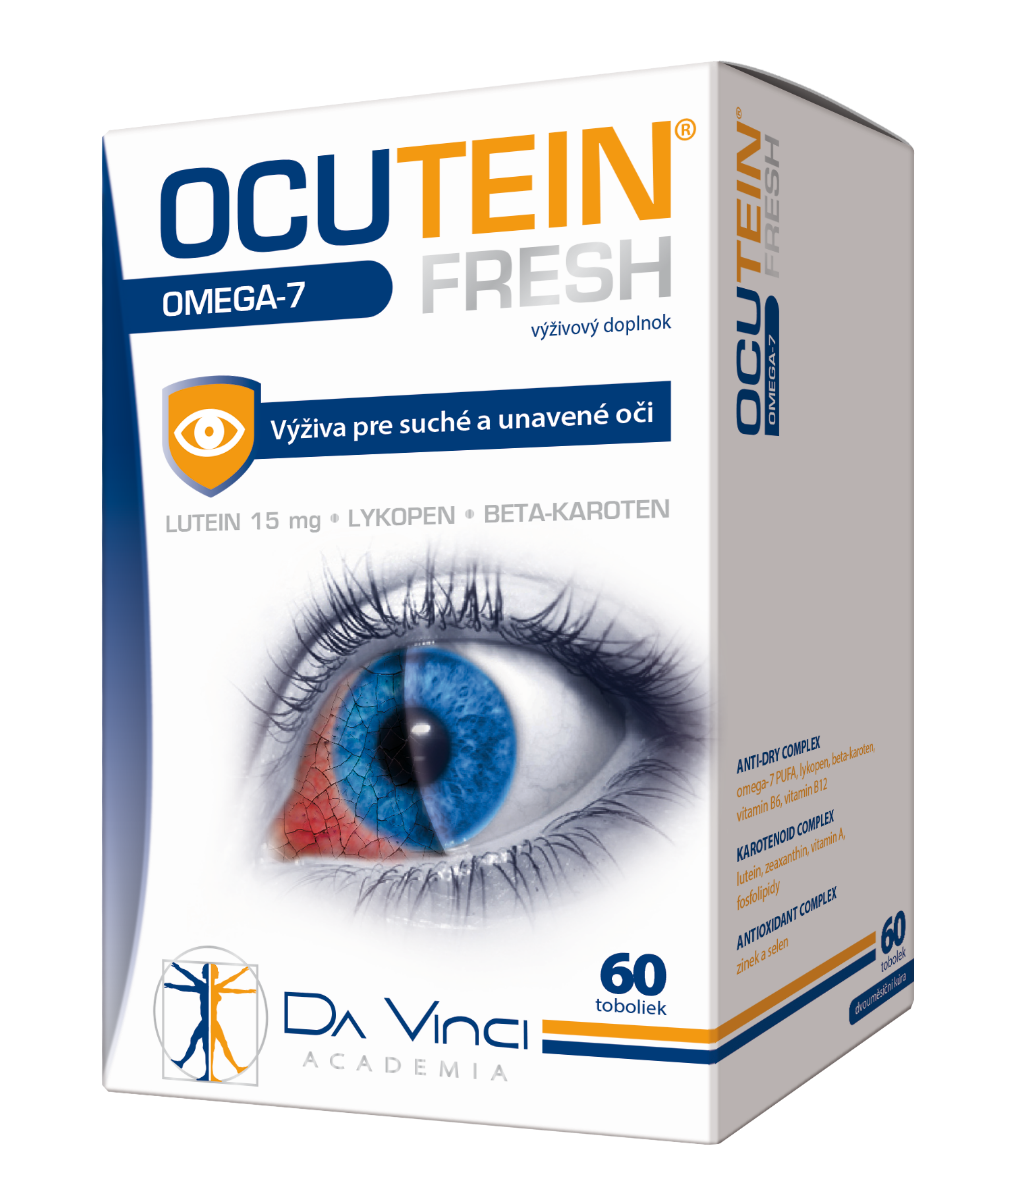 OCUTEIN FRESH Omega-7 - DA VINCI 60 tob.